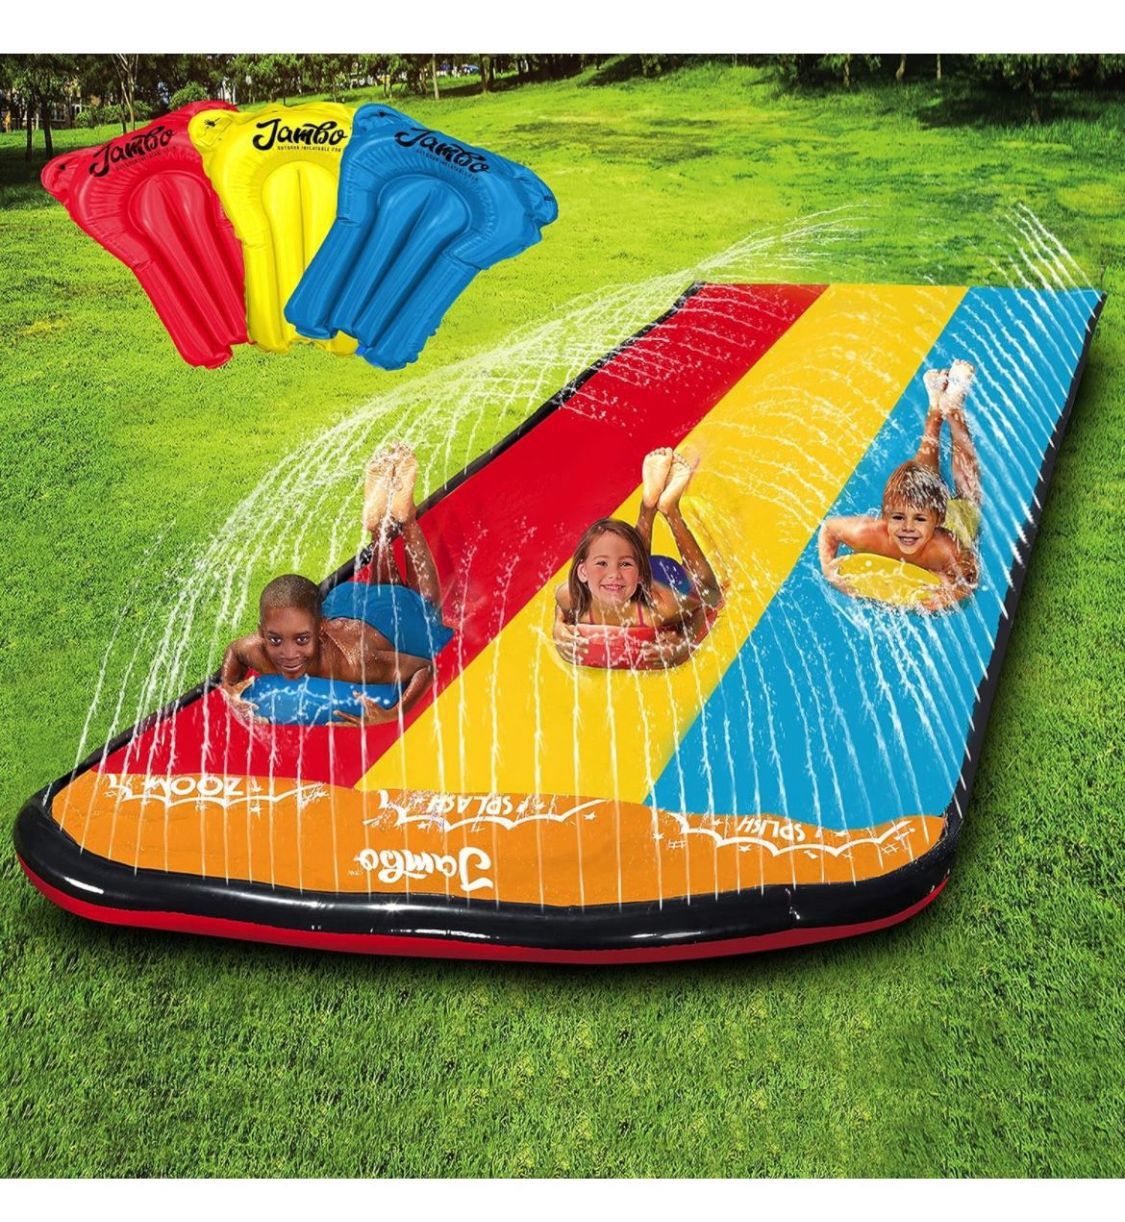 Jambo Premium Slip Splash and Slide with 3 Bodyboards$19.99